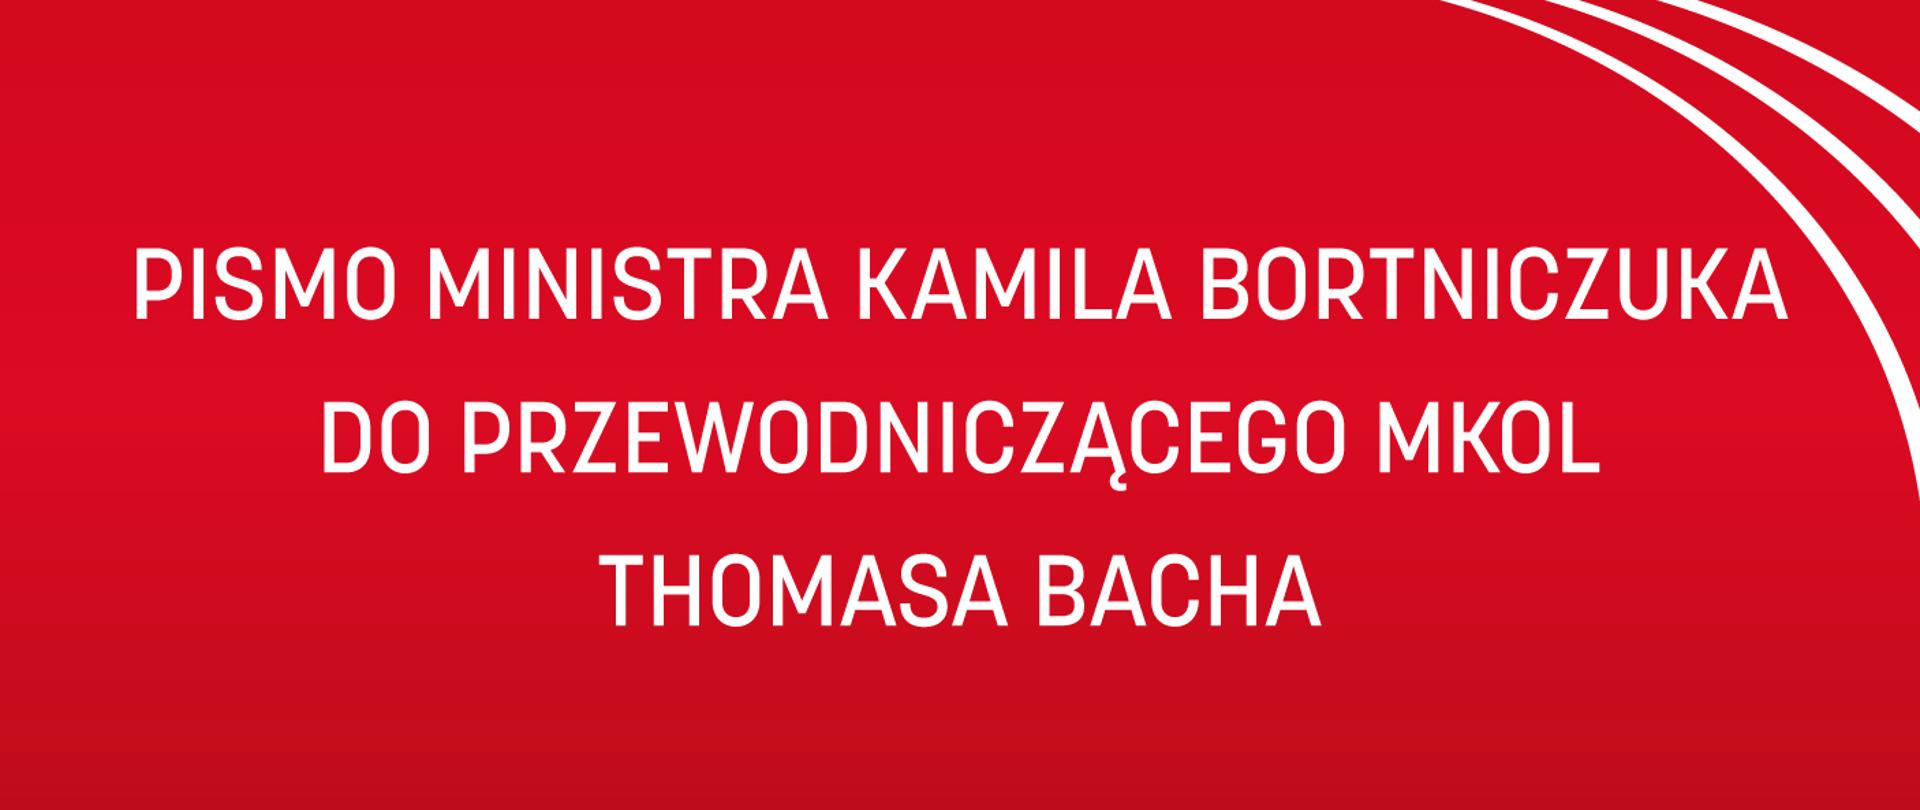 Czerwona grafika z białym napisem Pismo ministra Kamila Bortniczuka do Przewodniczącego MKOL Thomasa Bacha